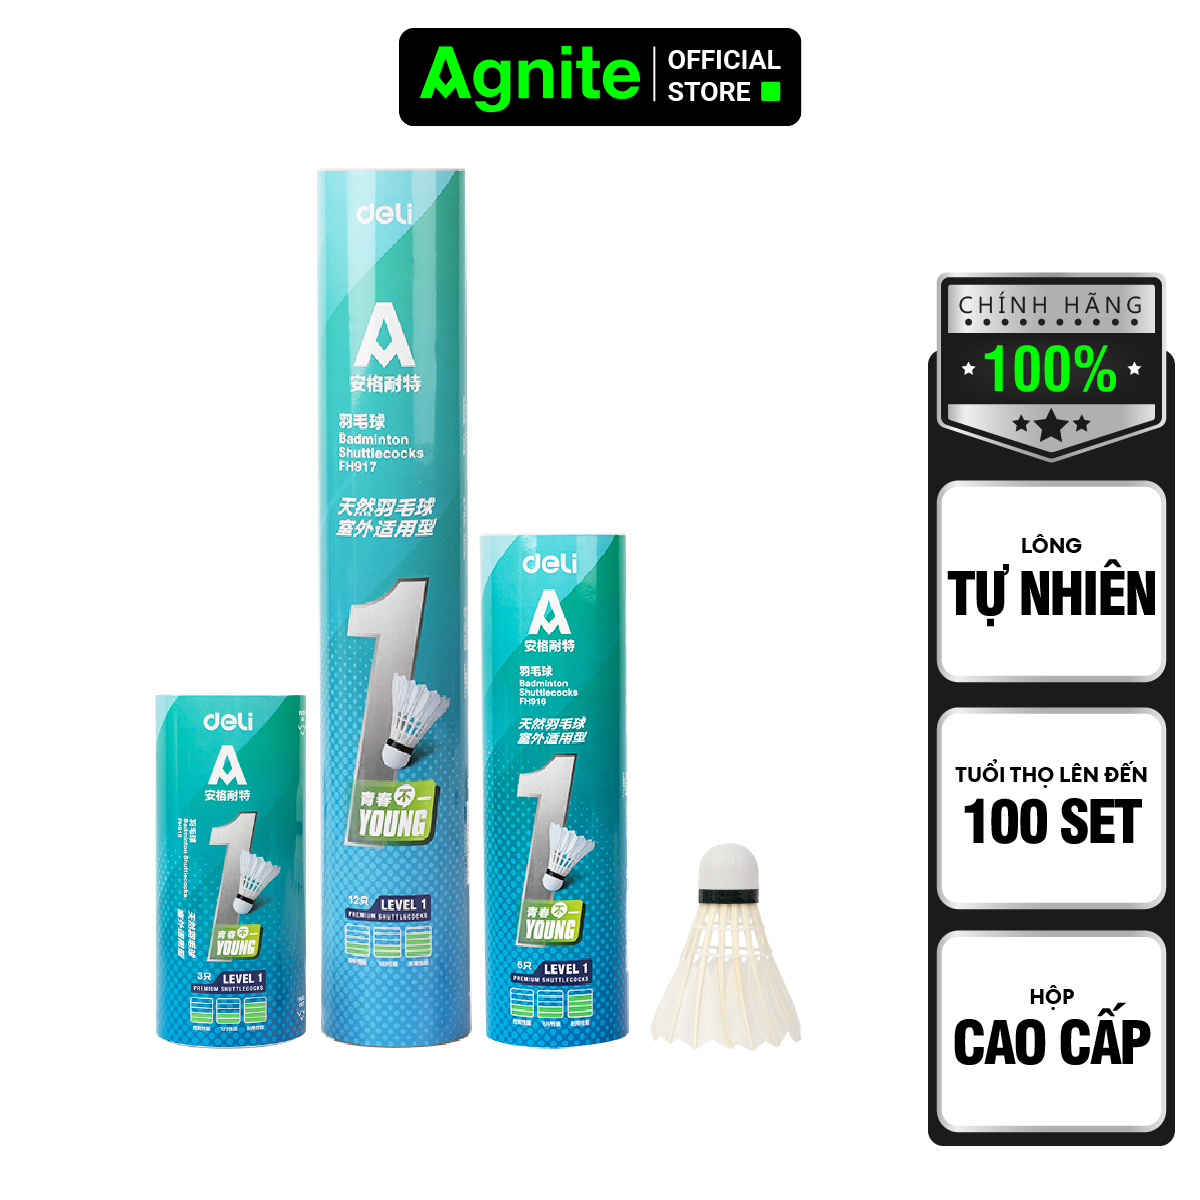 Hộp cầu lông cao cấp chính hãng Agnite, ống cầu lông vũ phục vụ luyện tập